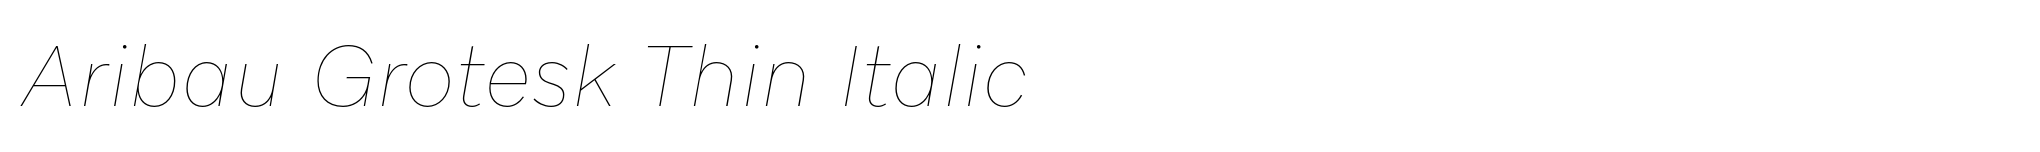 Aribau Grotesk Thin Italic image